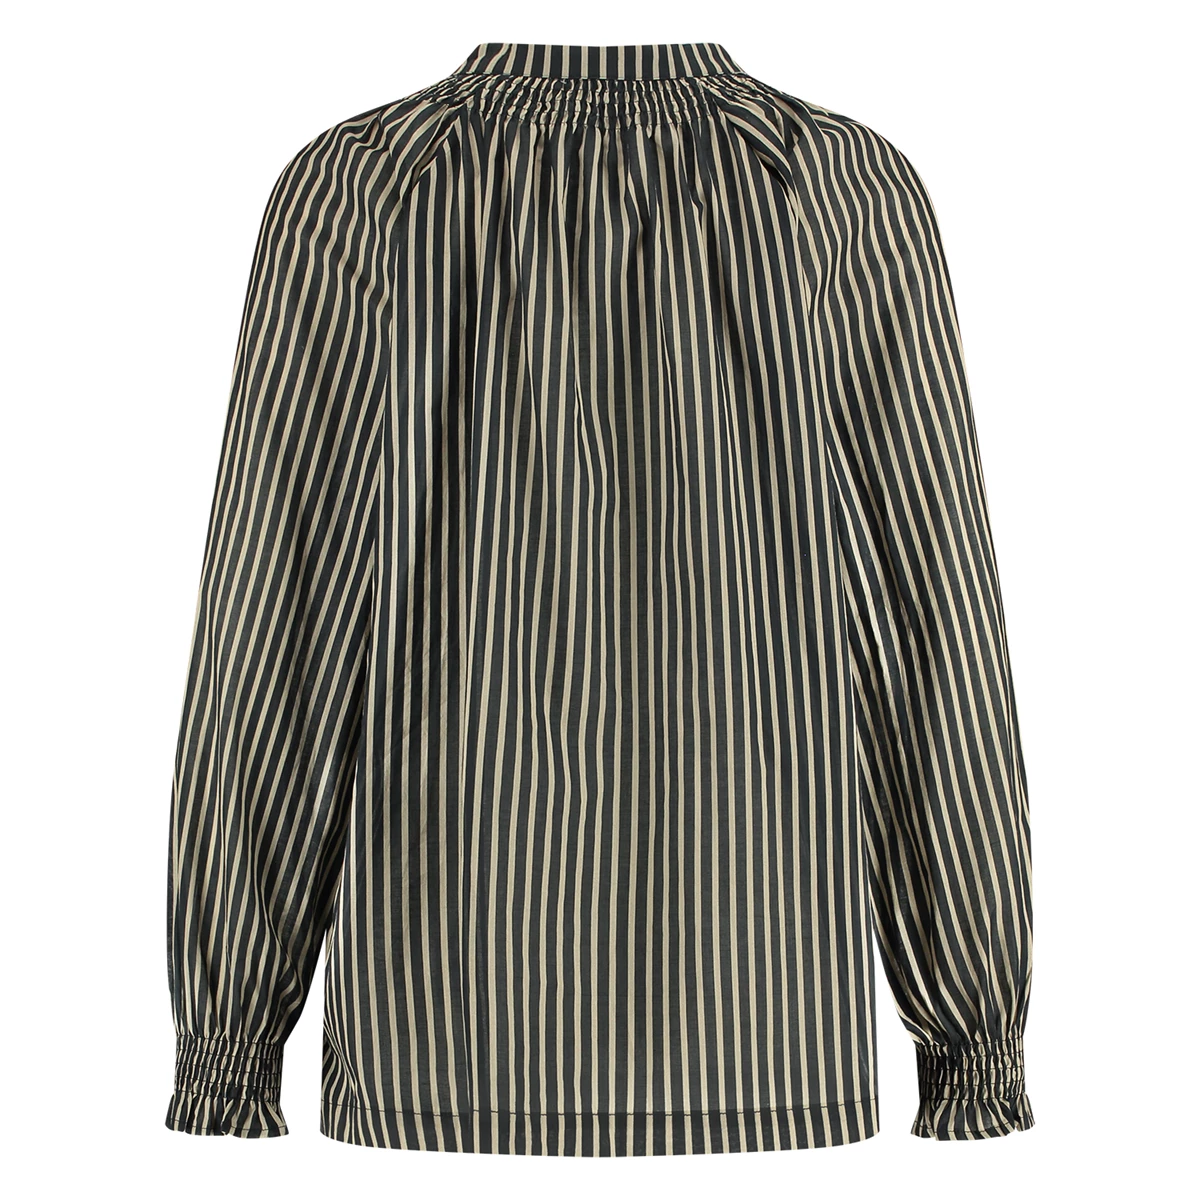 Nukus | Liz blouse stripe black/sand